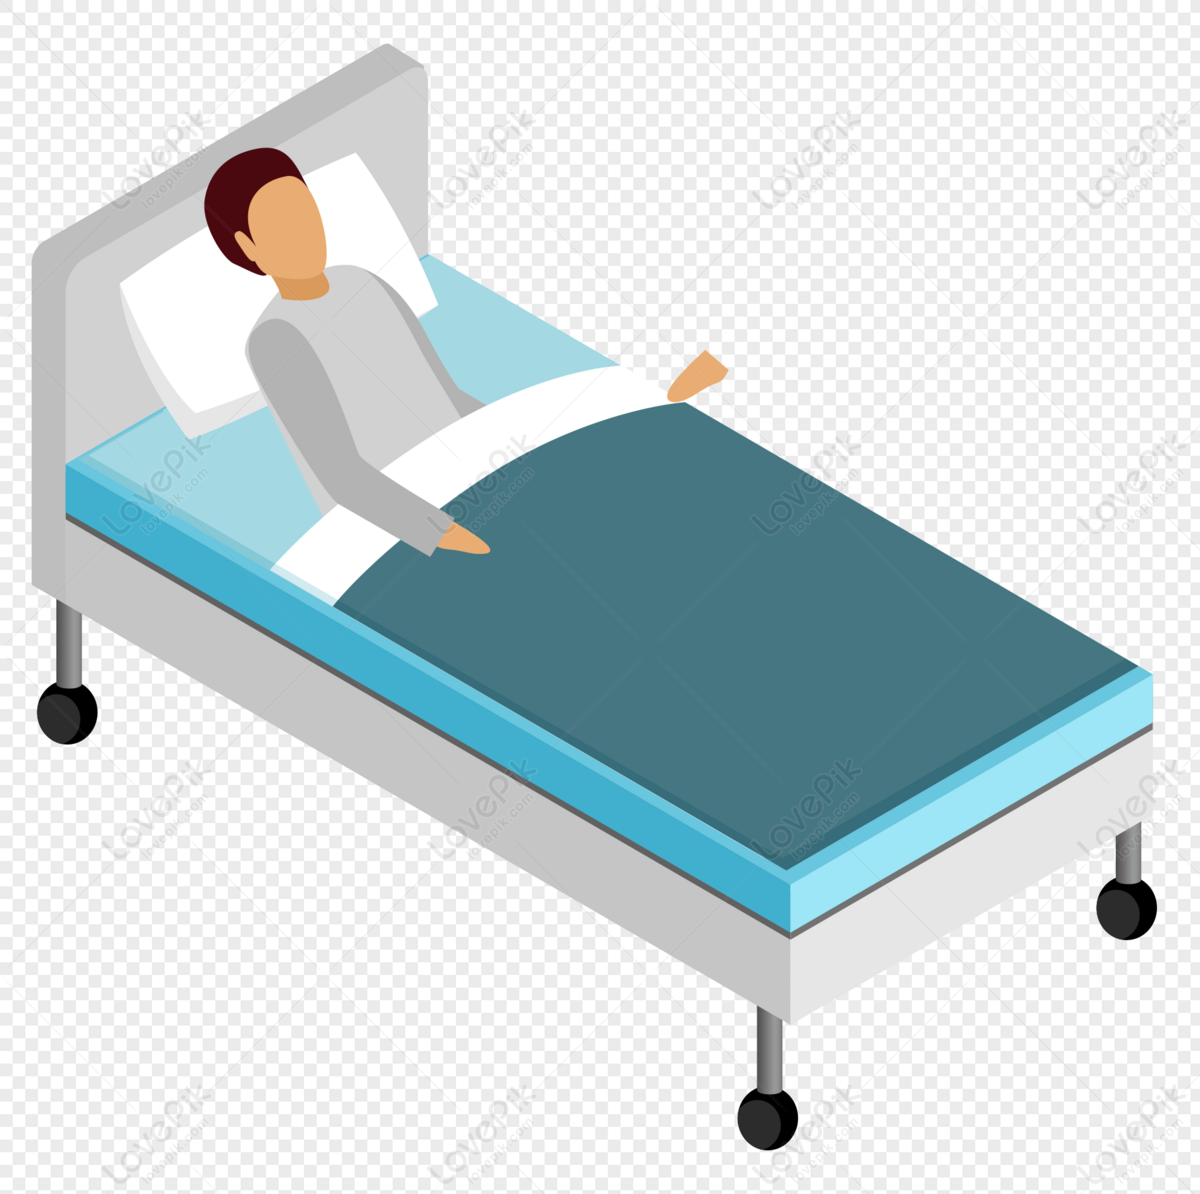 Giường bệnh viện - Quyết định đưa cho mình một giường bệnh viện mới đẹp sẽ giật nhiên làm nâng cao tâm trạng và đặc biệt là sự thoải mái cho bạn và người thân trong những thời điểm khó khăn. Xem hình ảnh liên quan để chọn lựa giường bệnh viện phù hợp cho bạn.